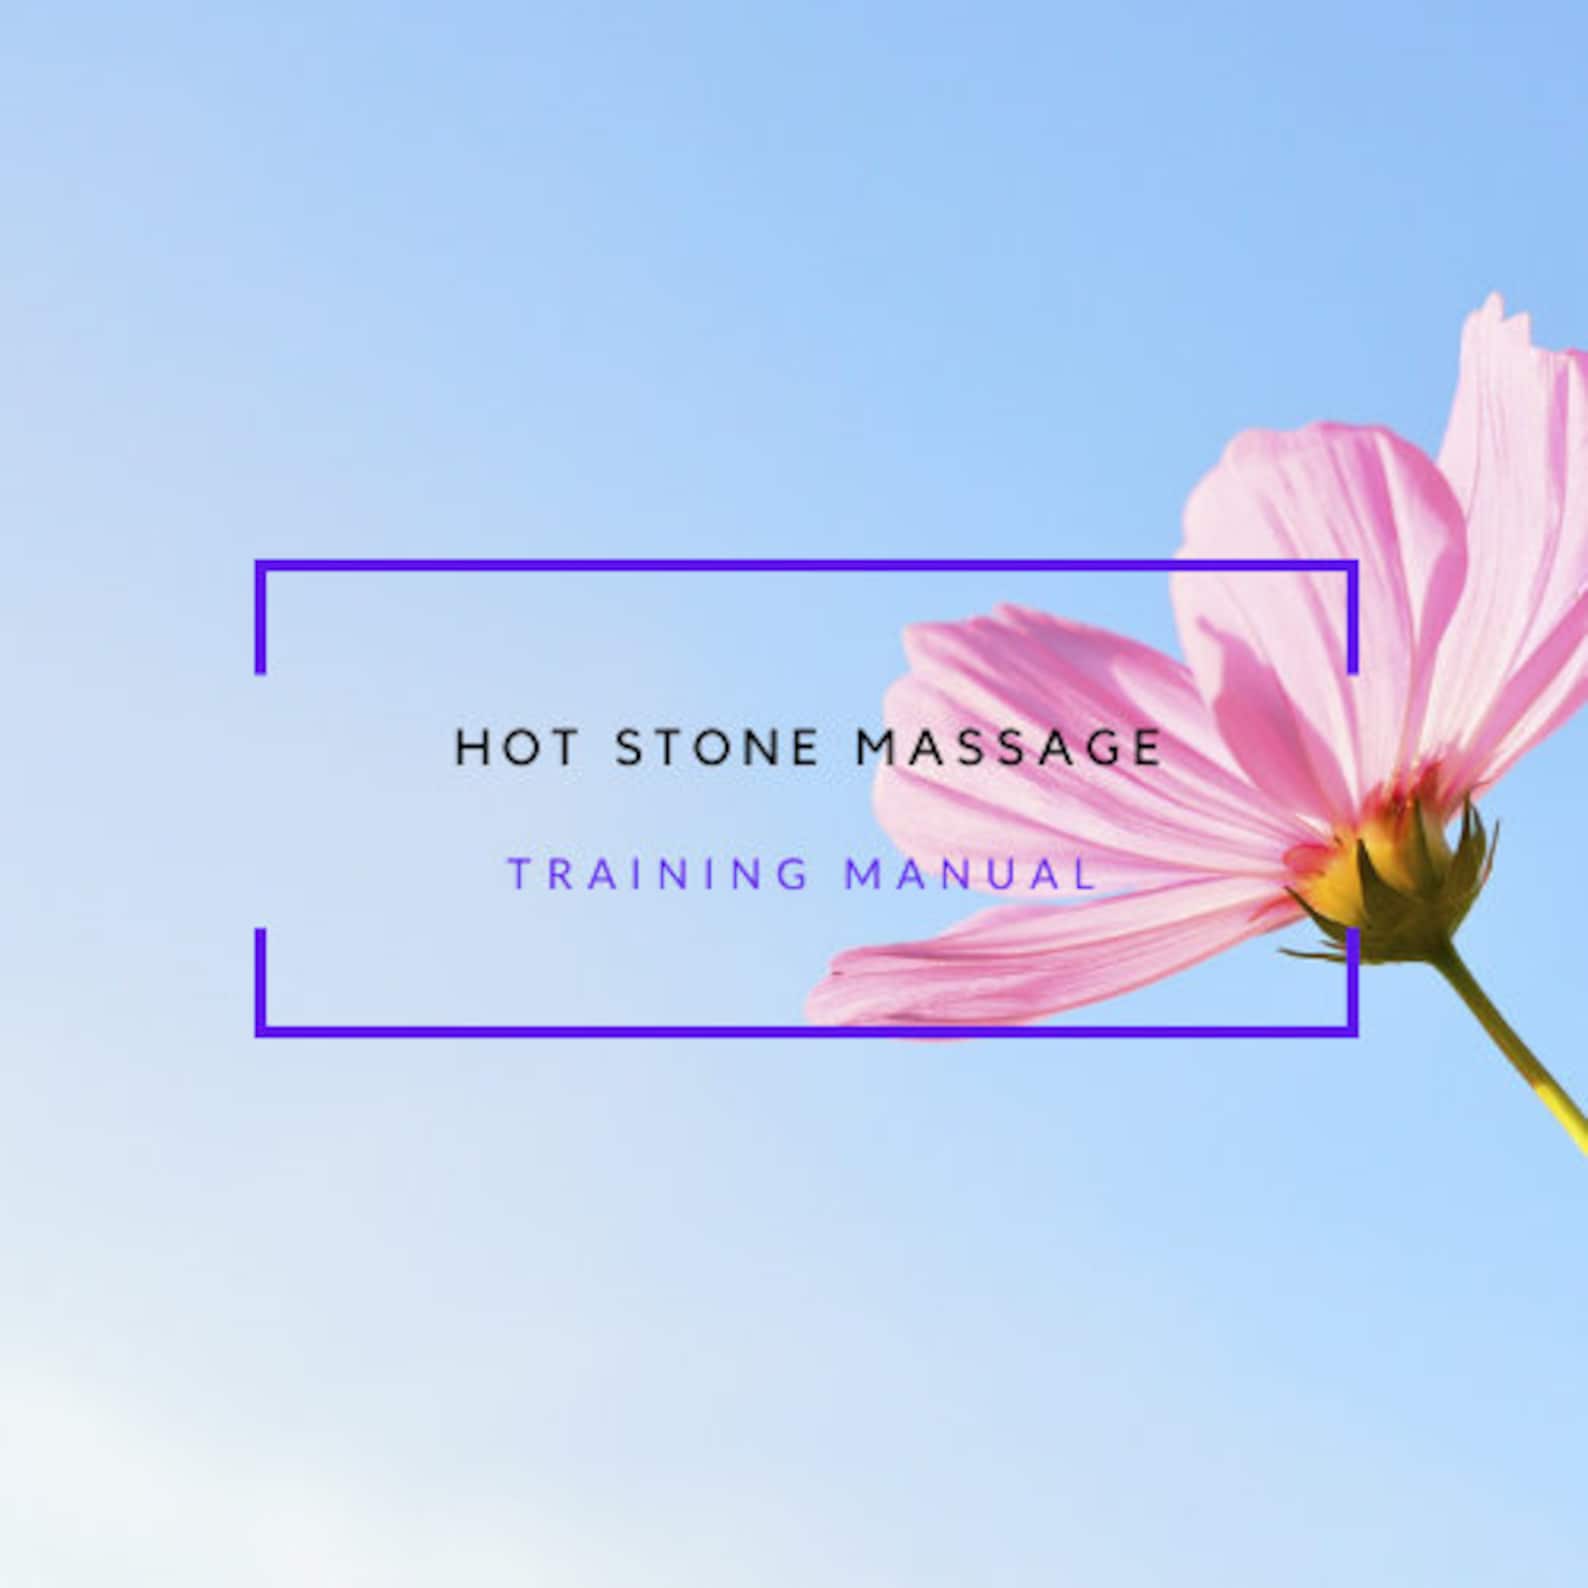 Hot Stone Massage Training Manual Etsy